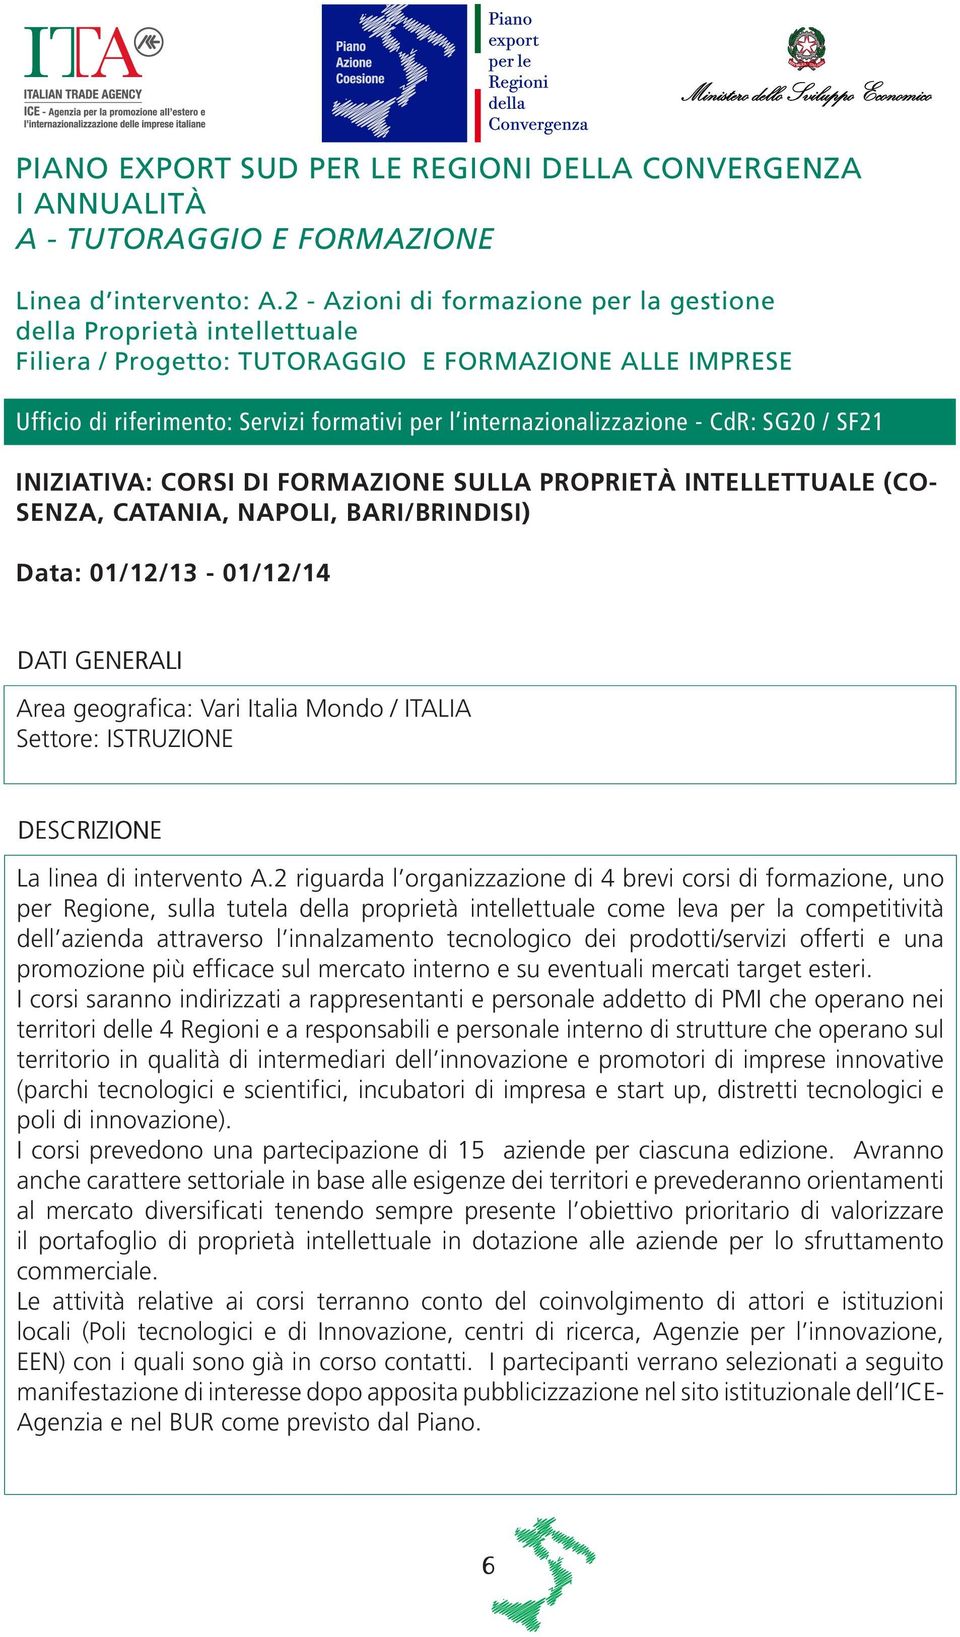 - CdR: SG20 / SF21 INIZIATIVA: CORSI DI FORMAZIONE SULLA PROPRIETÀ INTELLETTUALE (CO- SENZA, CATANIA, NAPOLI, BARI/BRINDISI) Data: 01/12/13-01/12/14 Area geografica: Vari Italia Mondo / ITALIA